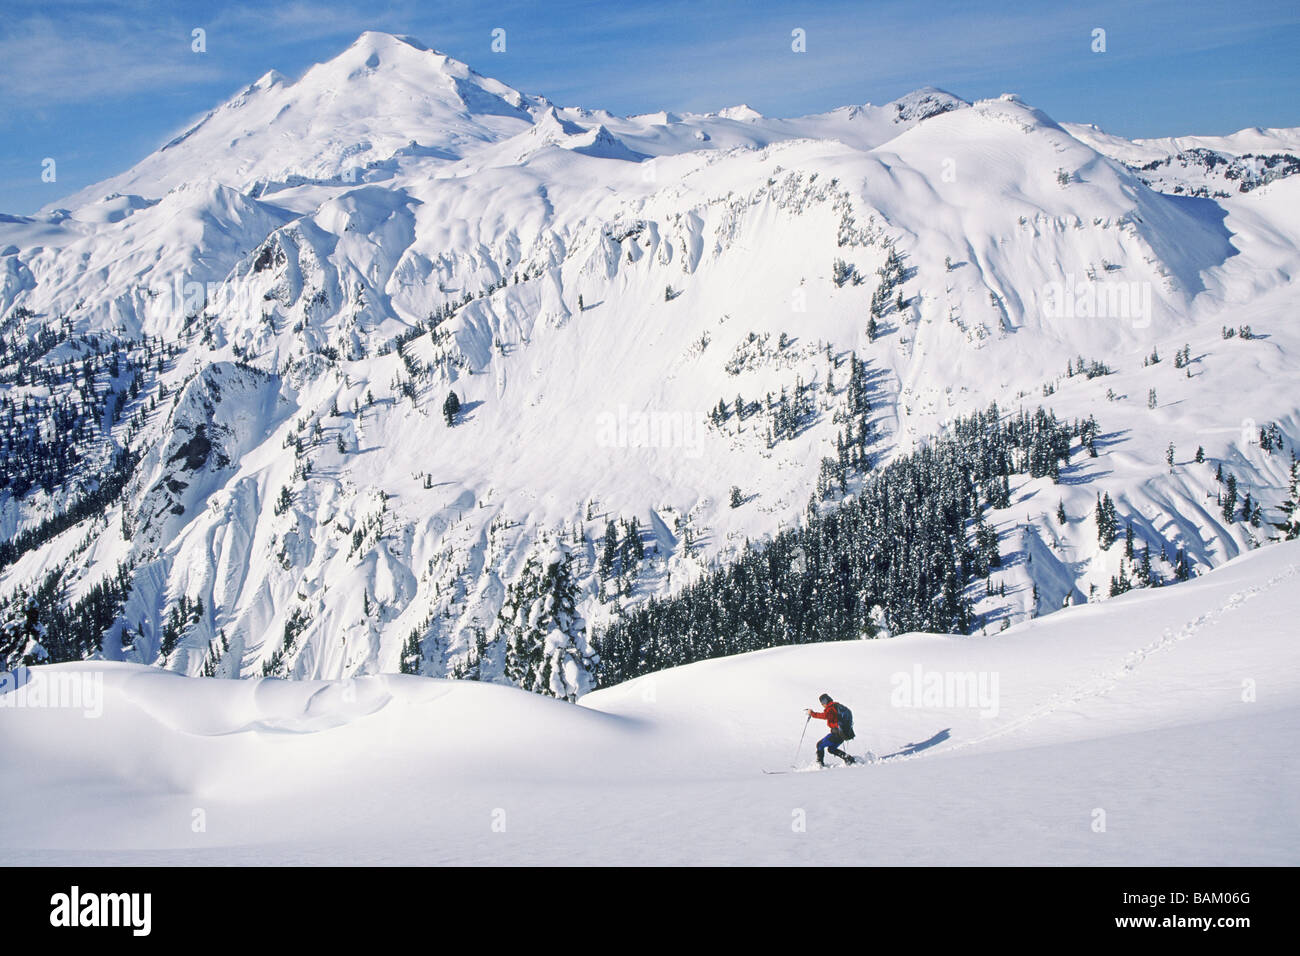 Man ski touring at artist's point Stock Photo